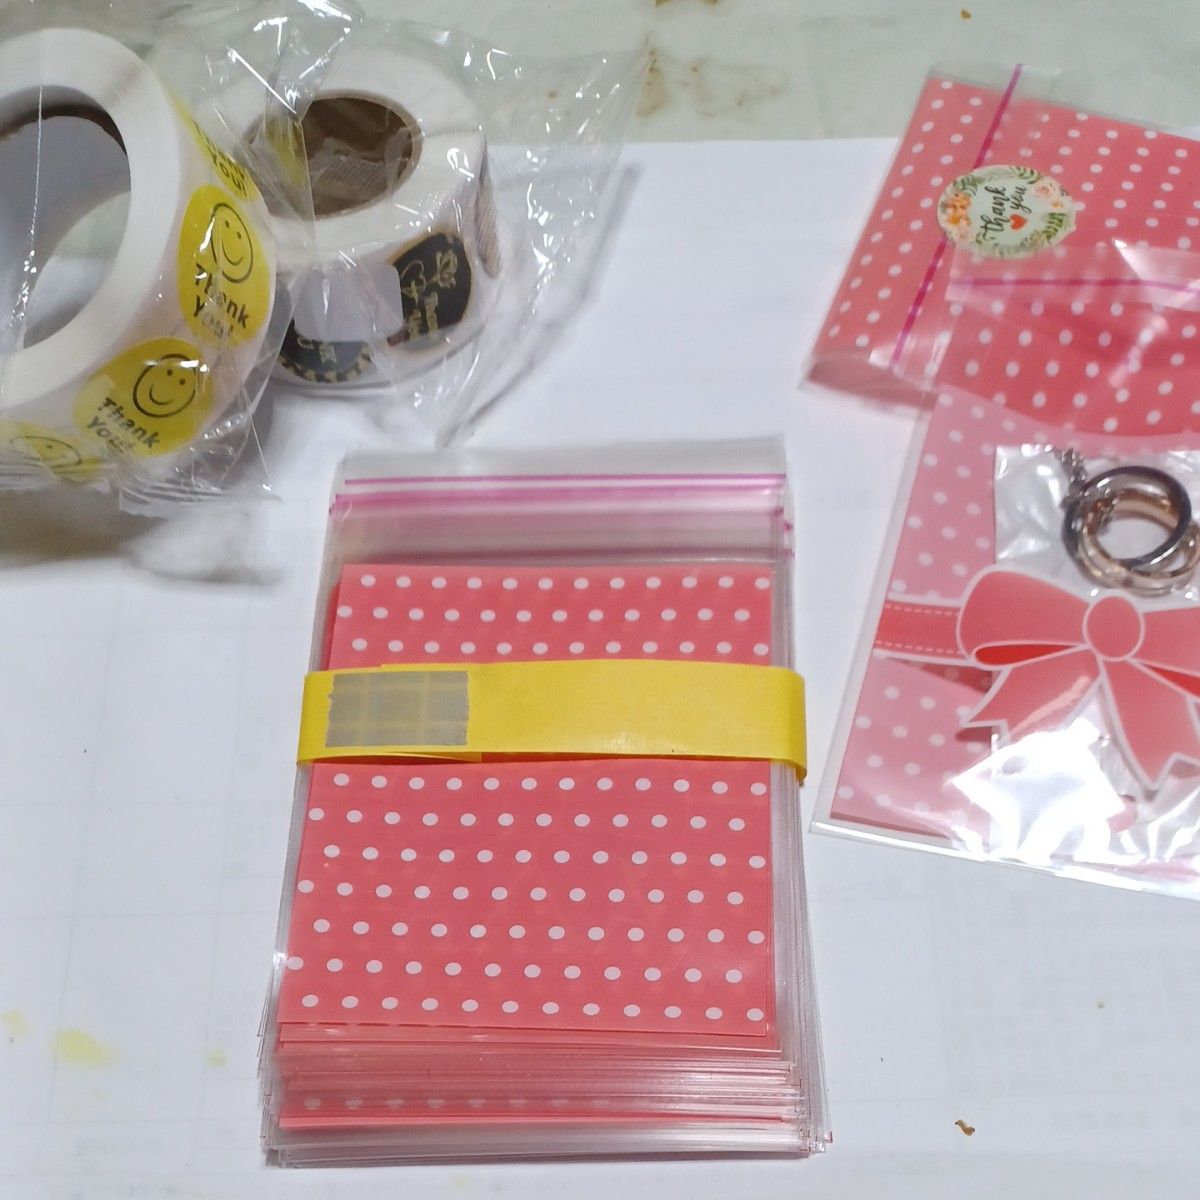 サンキューシール2巻 & オップ袋のり付 50枚 セット☆フリマの品物やプレゼント用ラッピングセット包装用に如何でしょうか？